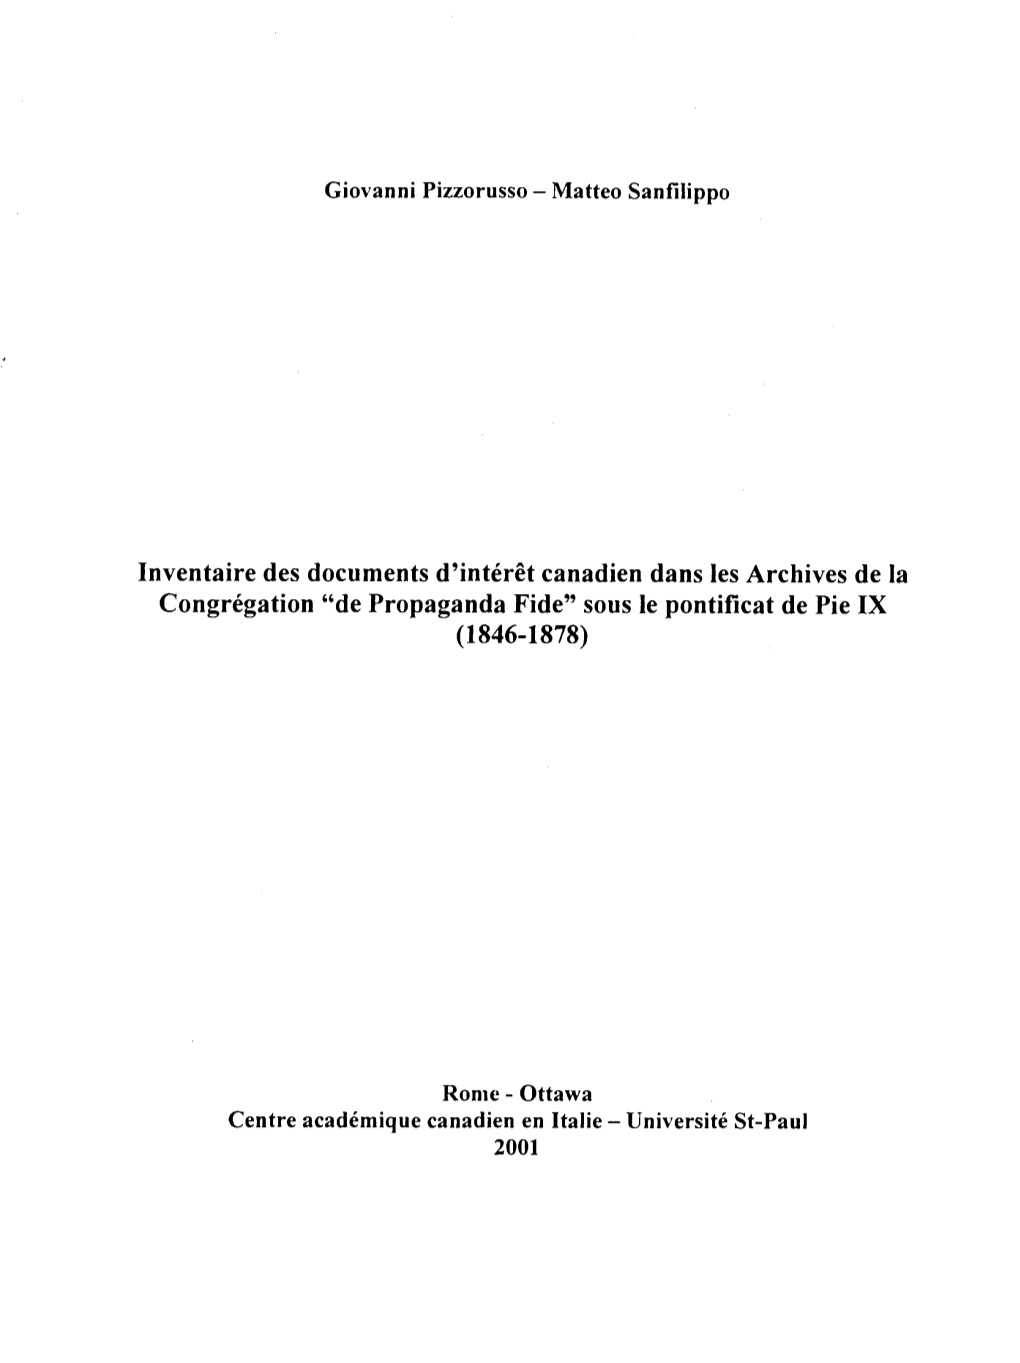 Inventaire Des Documents D'interet Canadien Dans Lesarchives De La